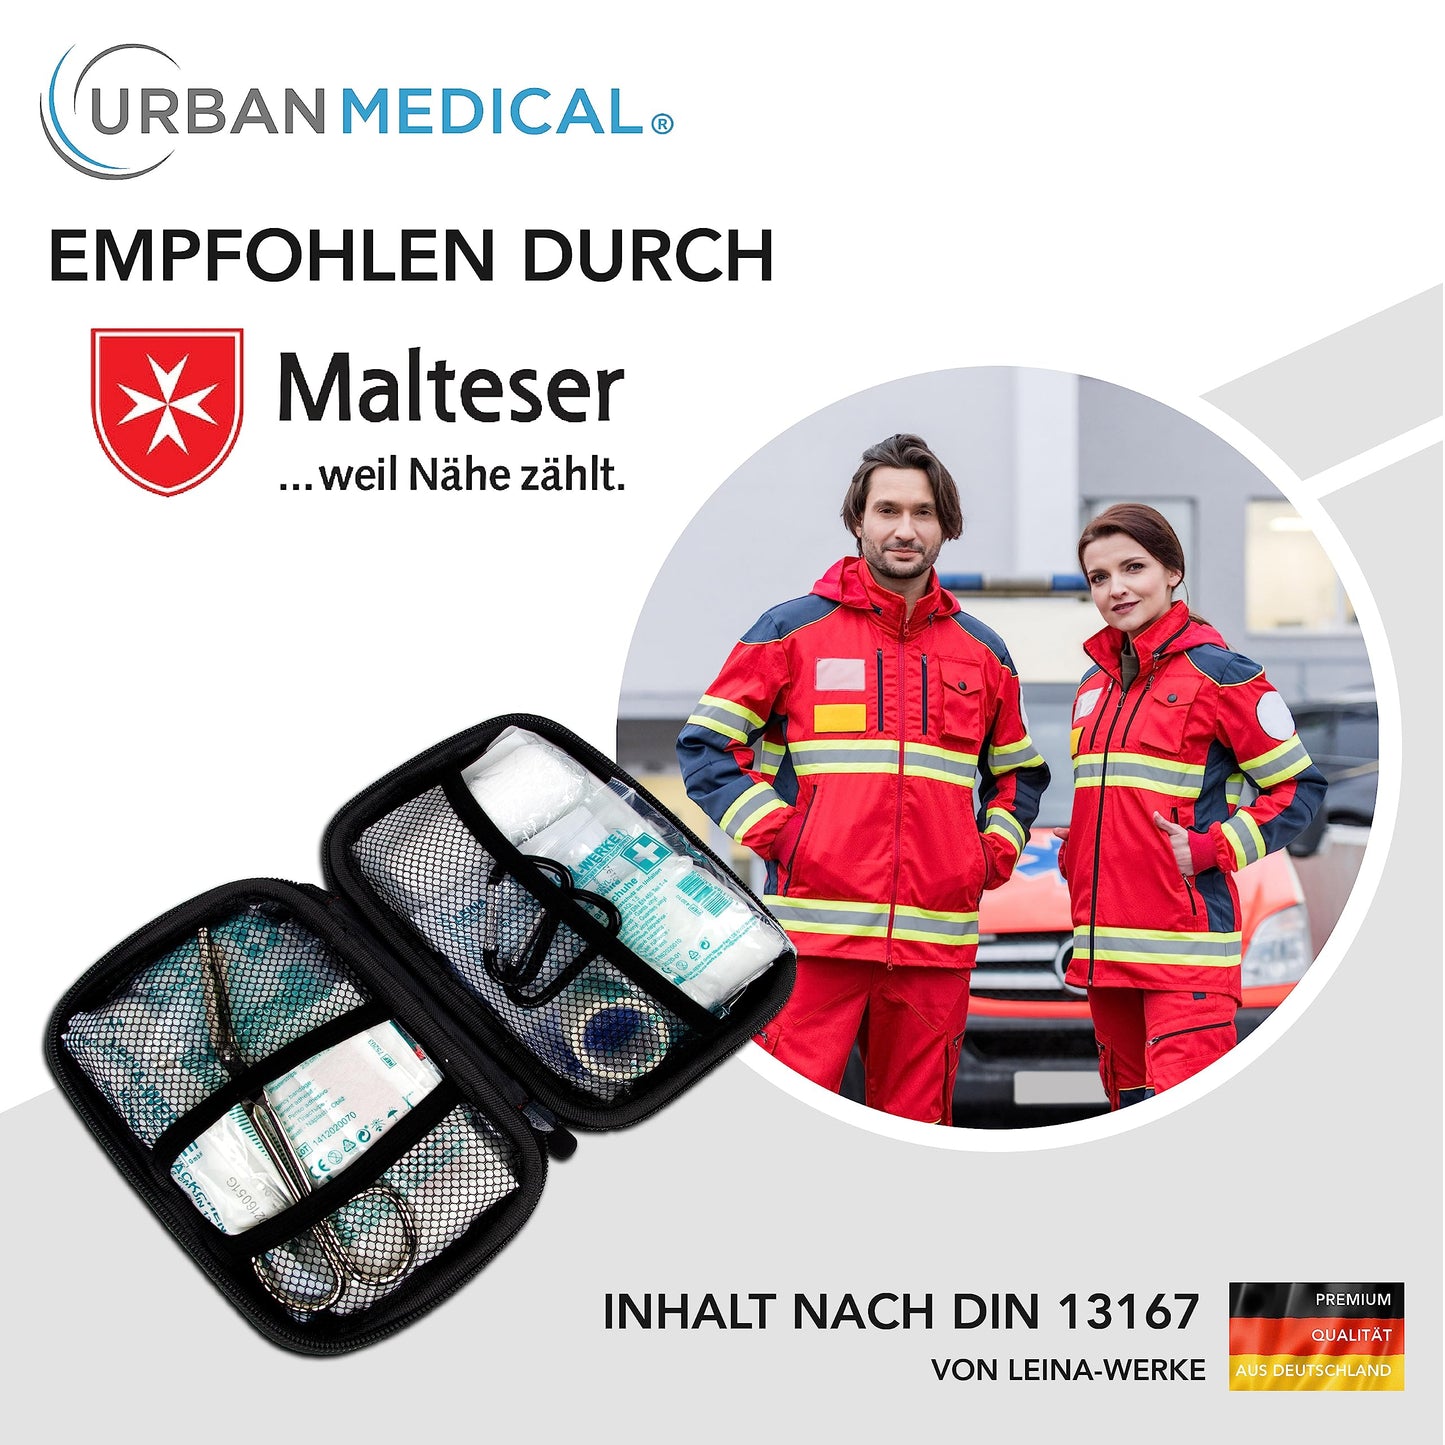 Erste Hilfe Set nach DIN 13167 inkl. gratis Regenponcho & Rettungsdecke